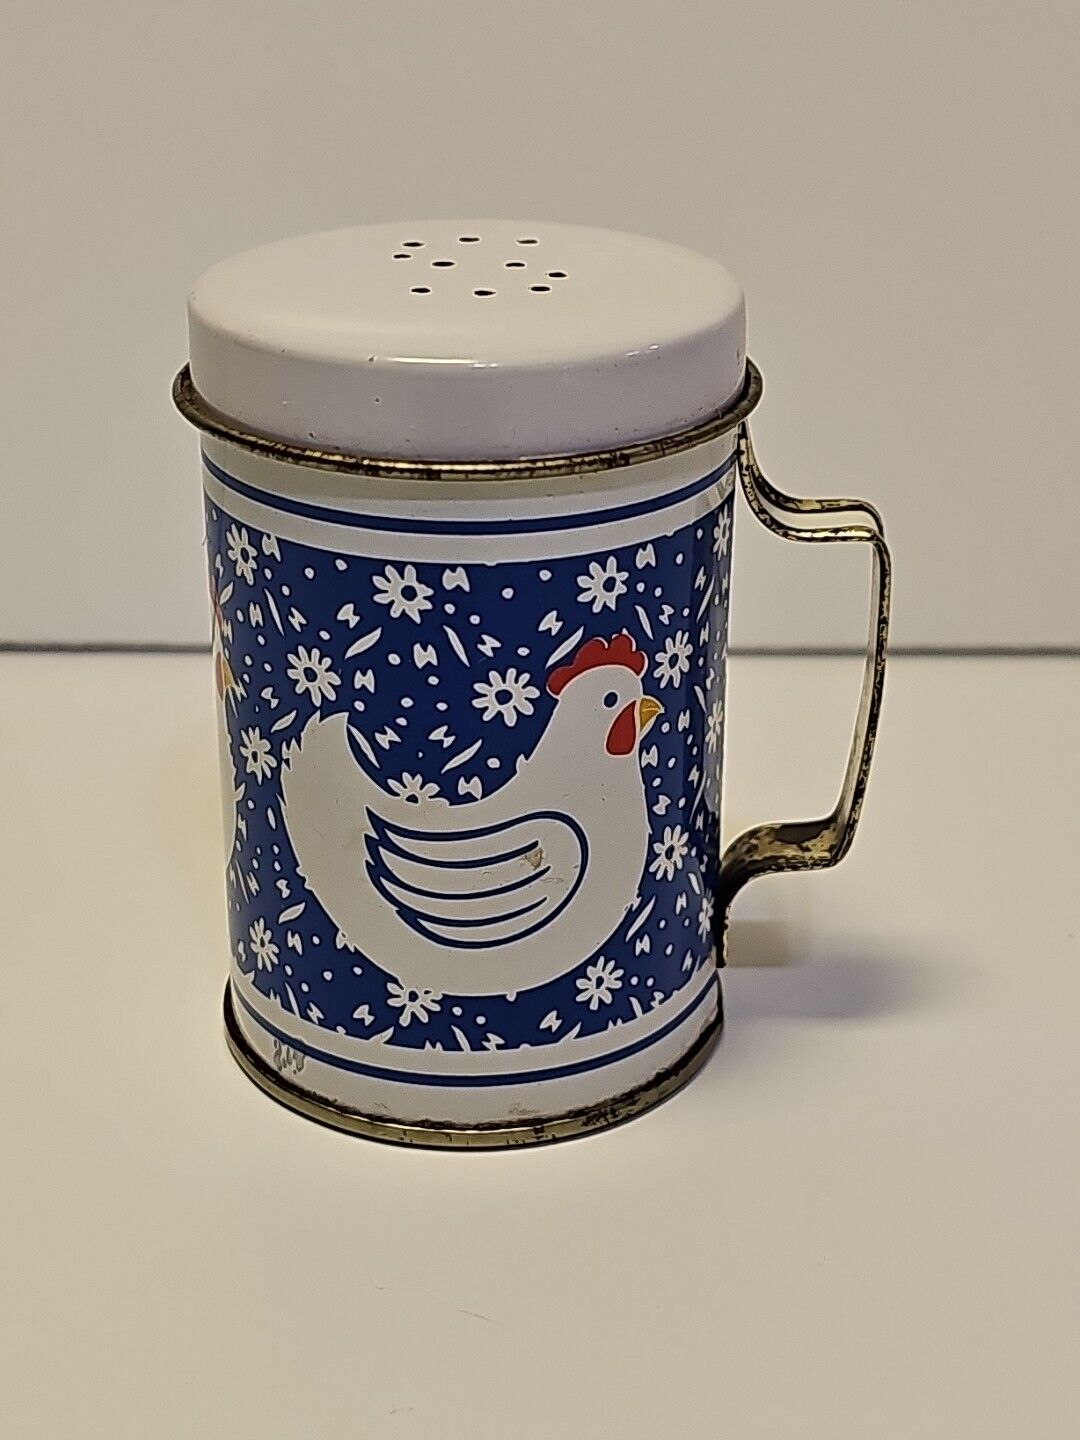 Vintage Metal Single Salt Shaker - Chicken/Rooster 